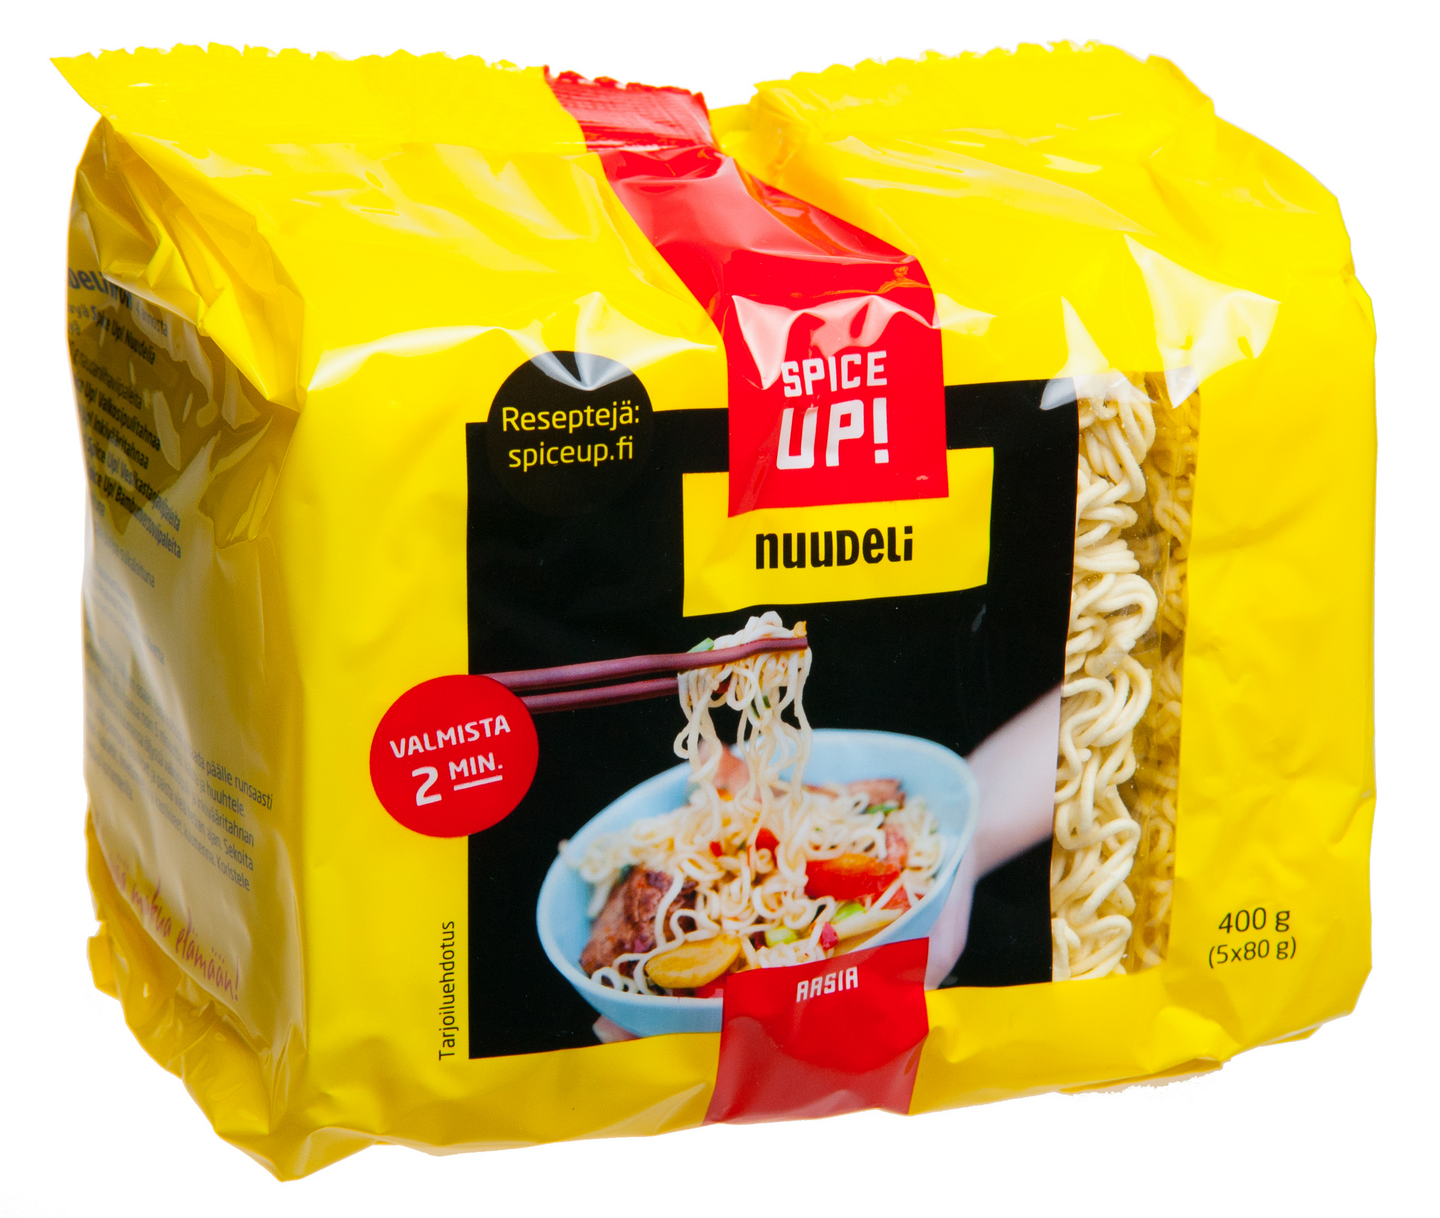 Spice Up Nuudeli 400g | K-Ruoka Verkkokauppa